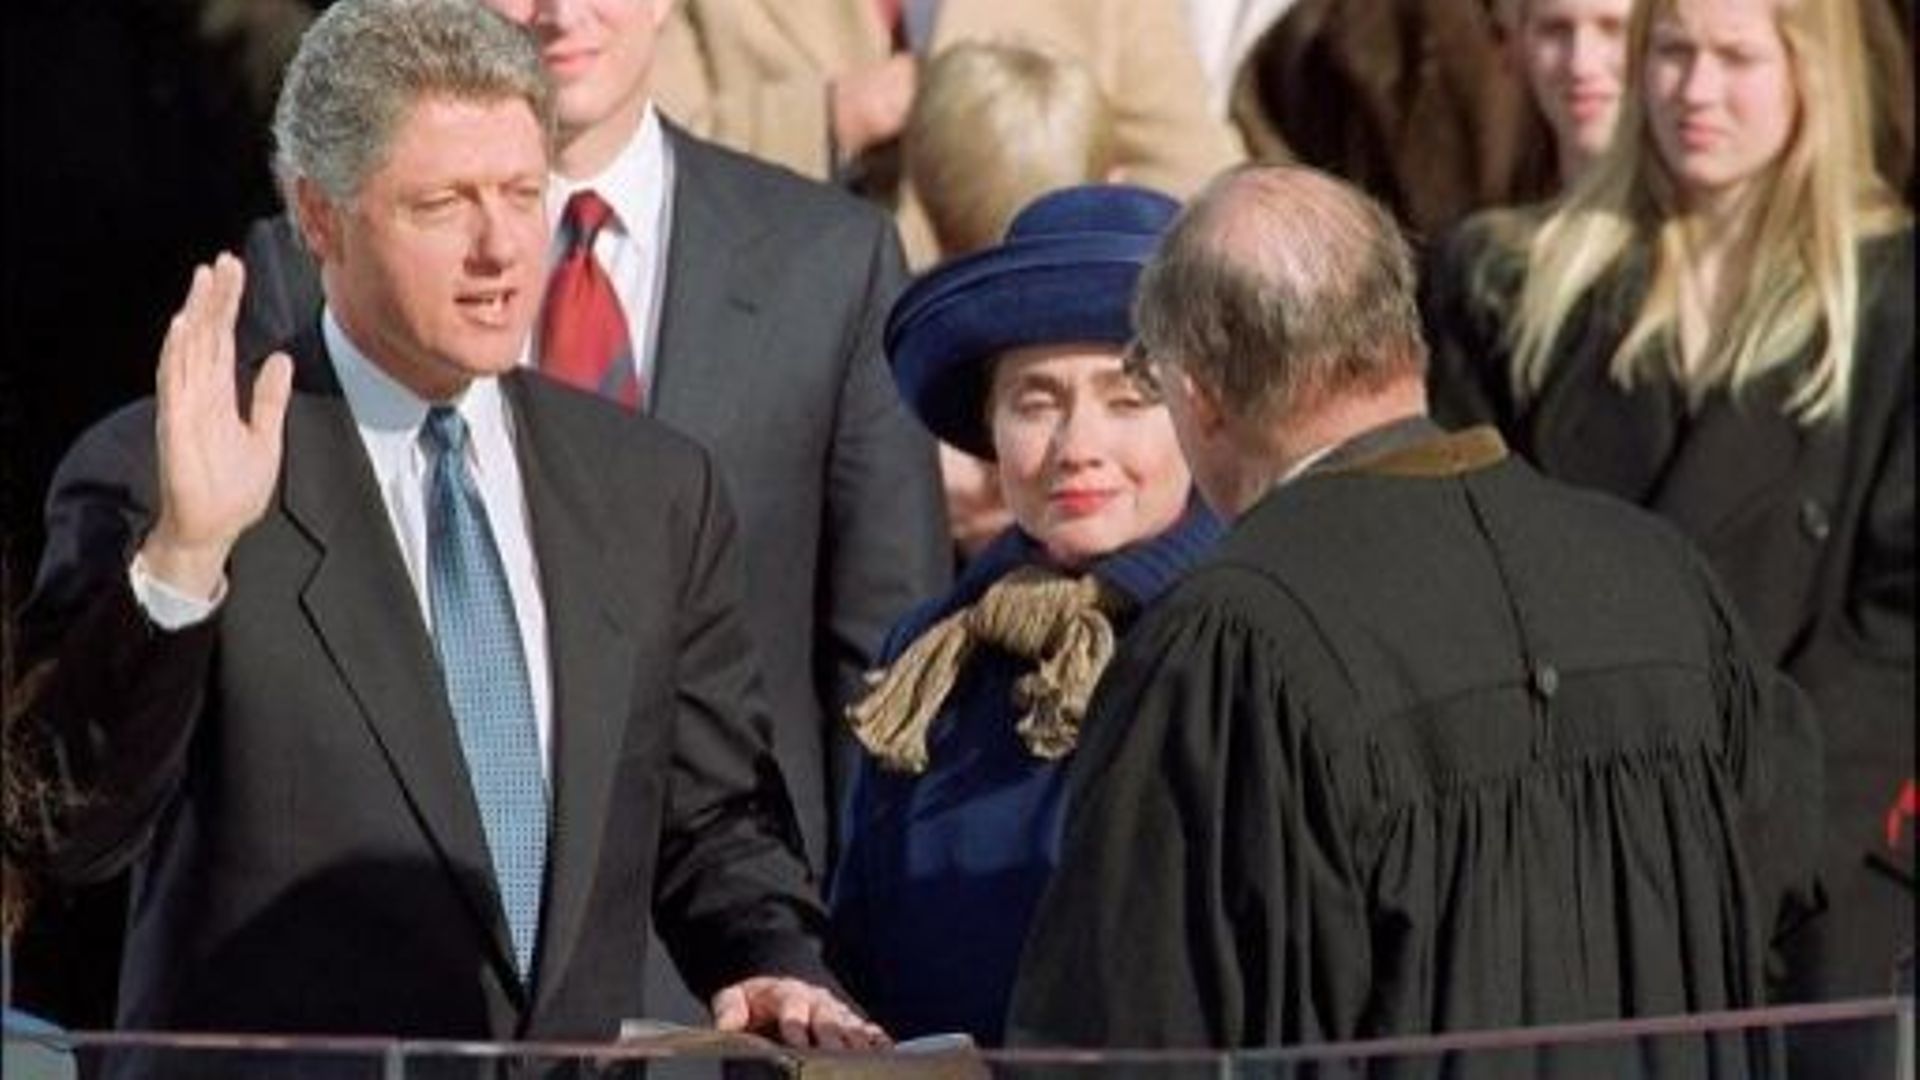 Bill et Hillary Clinton, le 20 janvier 1993 lors de la prestation de serment à Washington